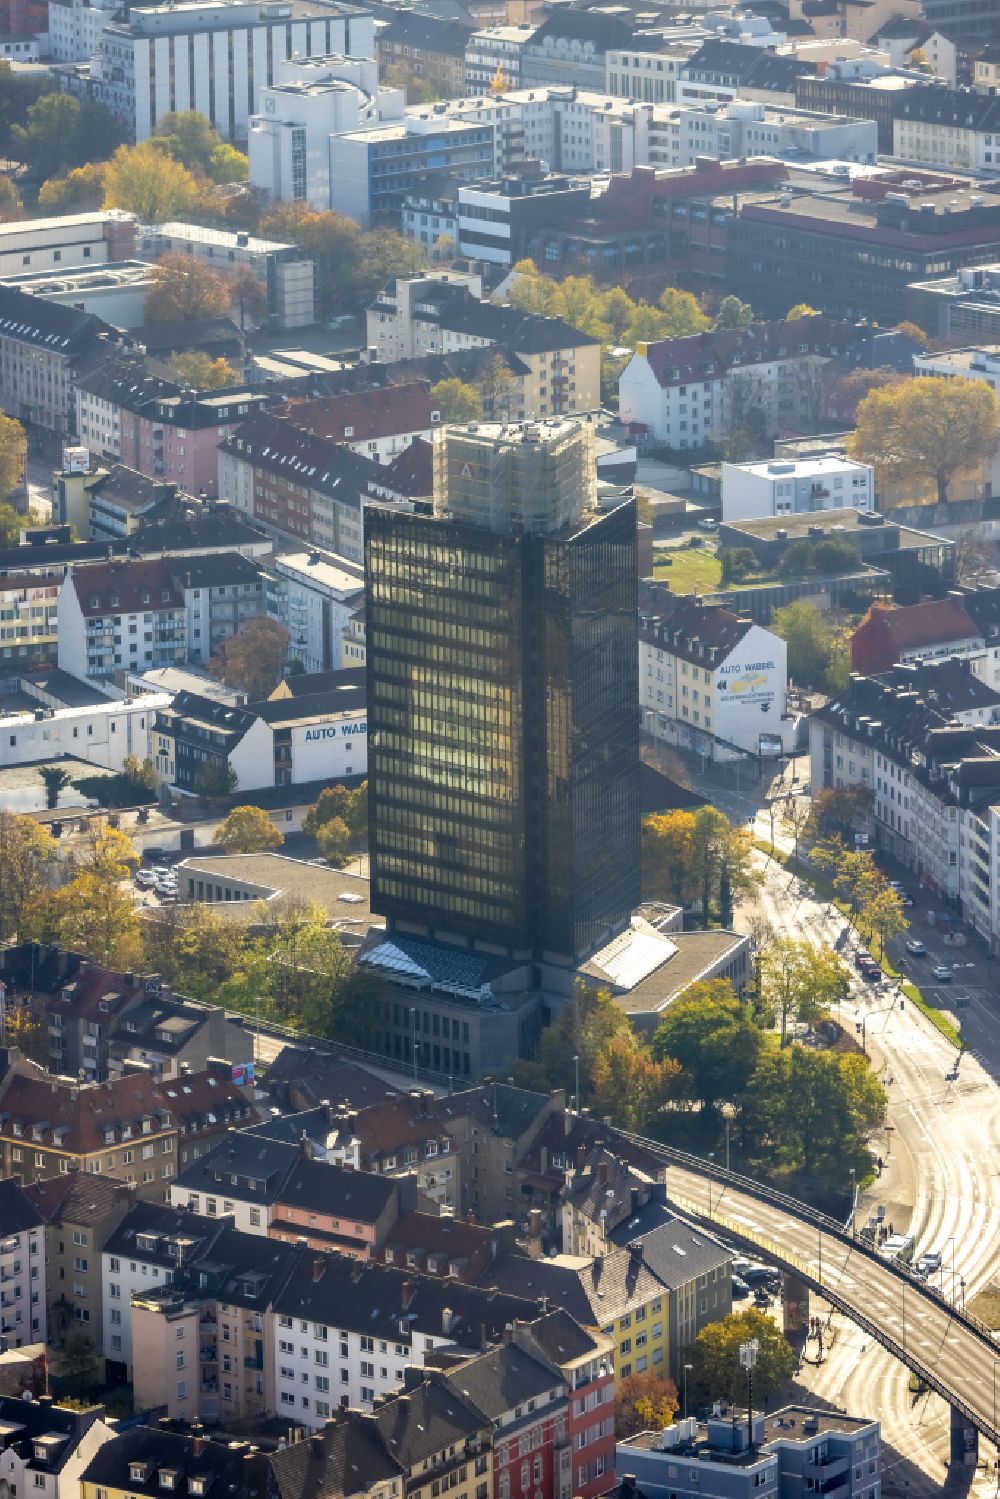 Hagen von oben - Hochhaus- Gebäude Agentur für Arbeit an der Körnerstraße in Hagen im Bundesland Nordrhein-Westfalen